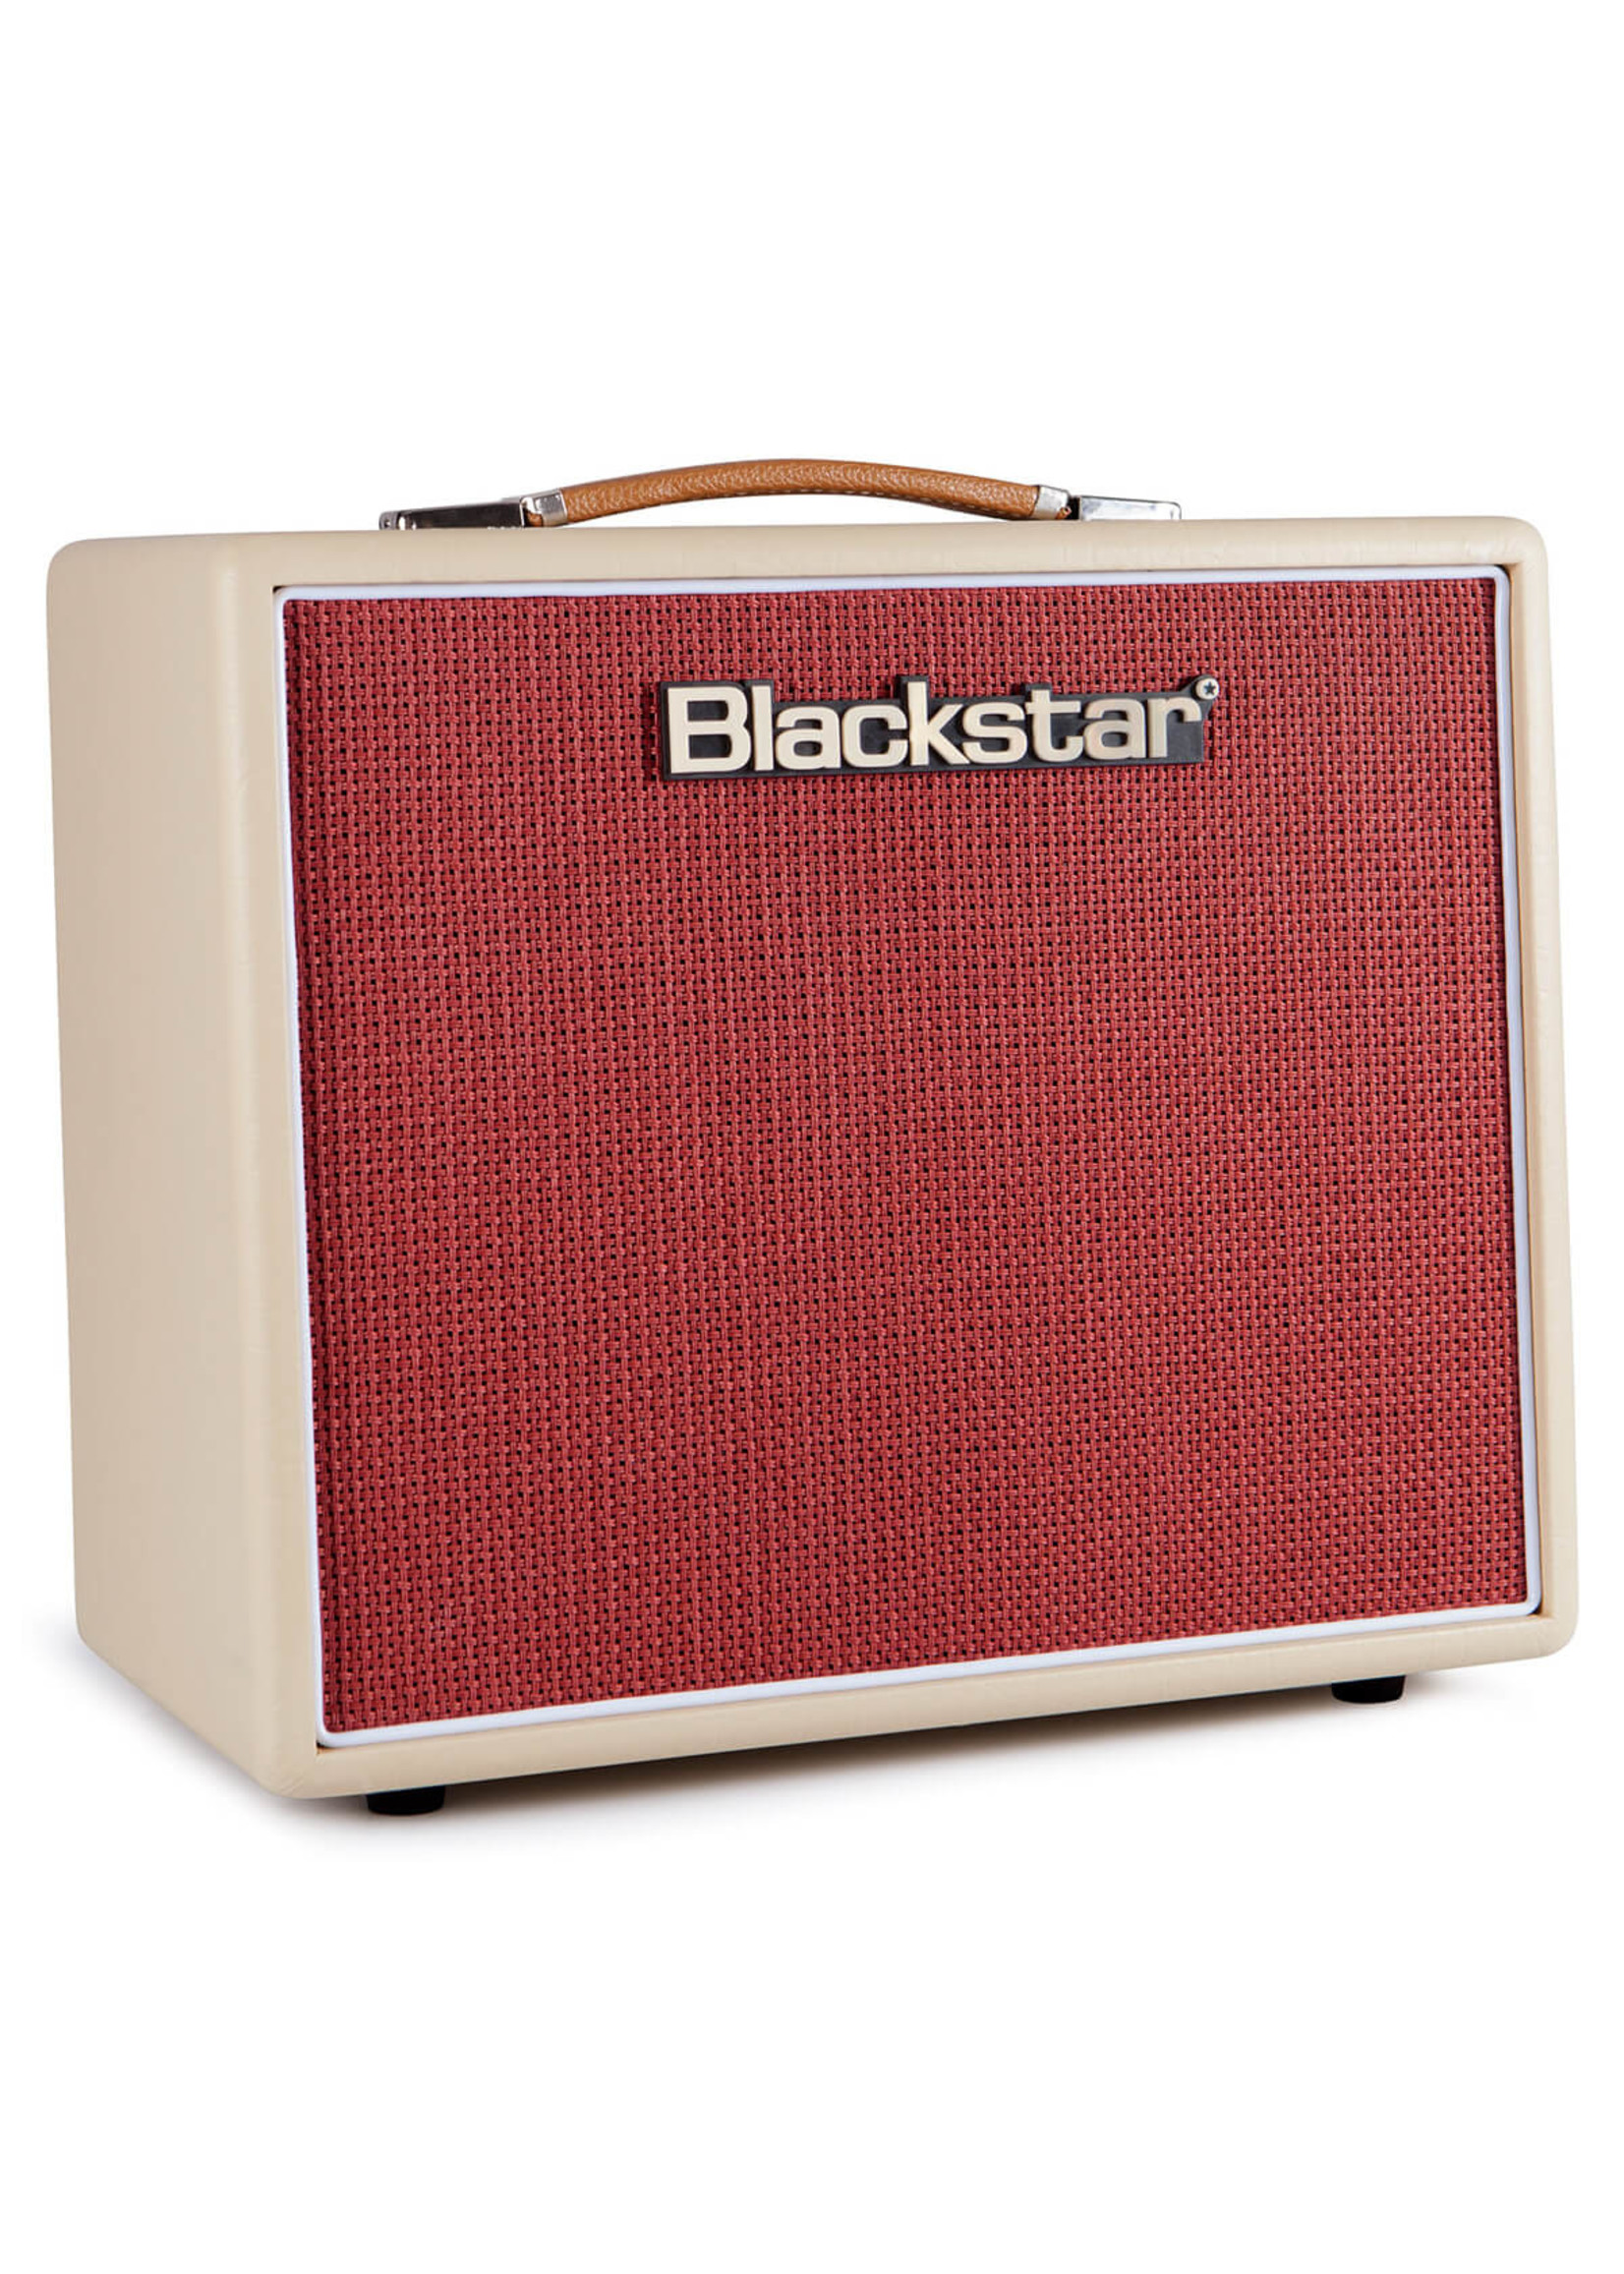 Blackstar Blackstar Studio 10 6L6 Combo Guitar Amp